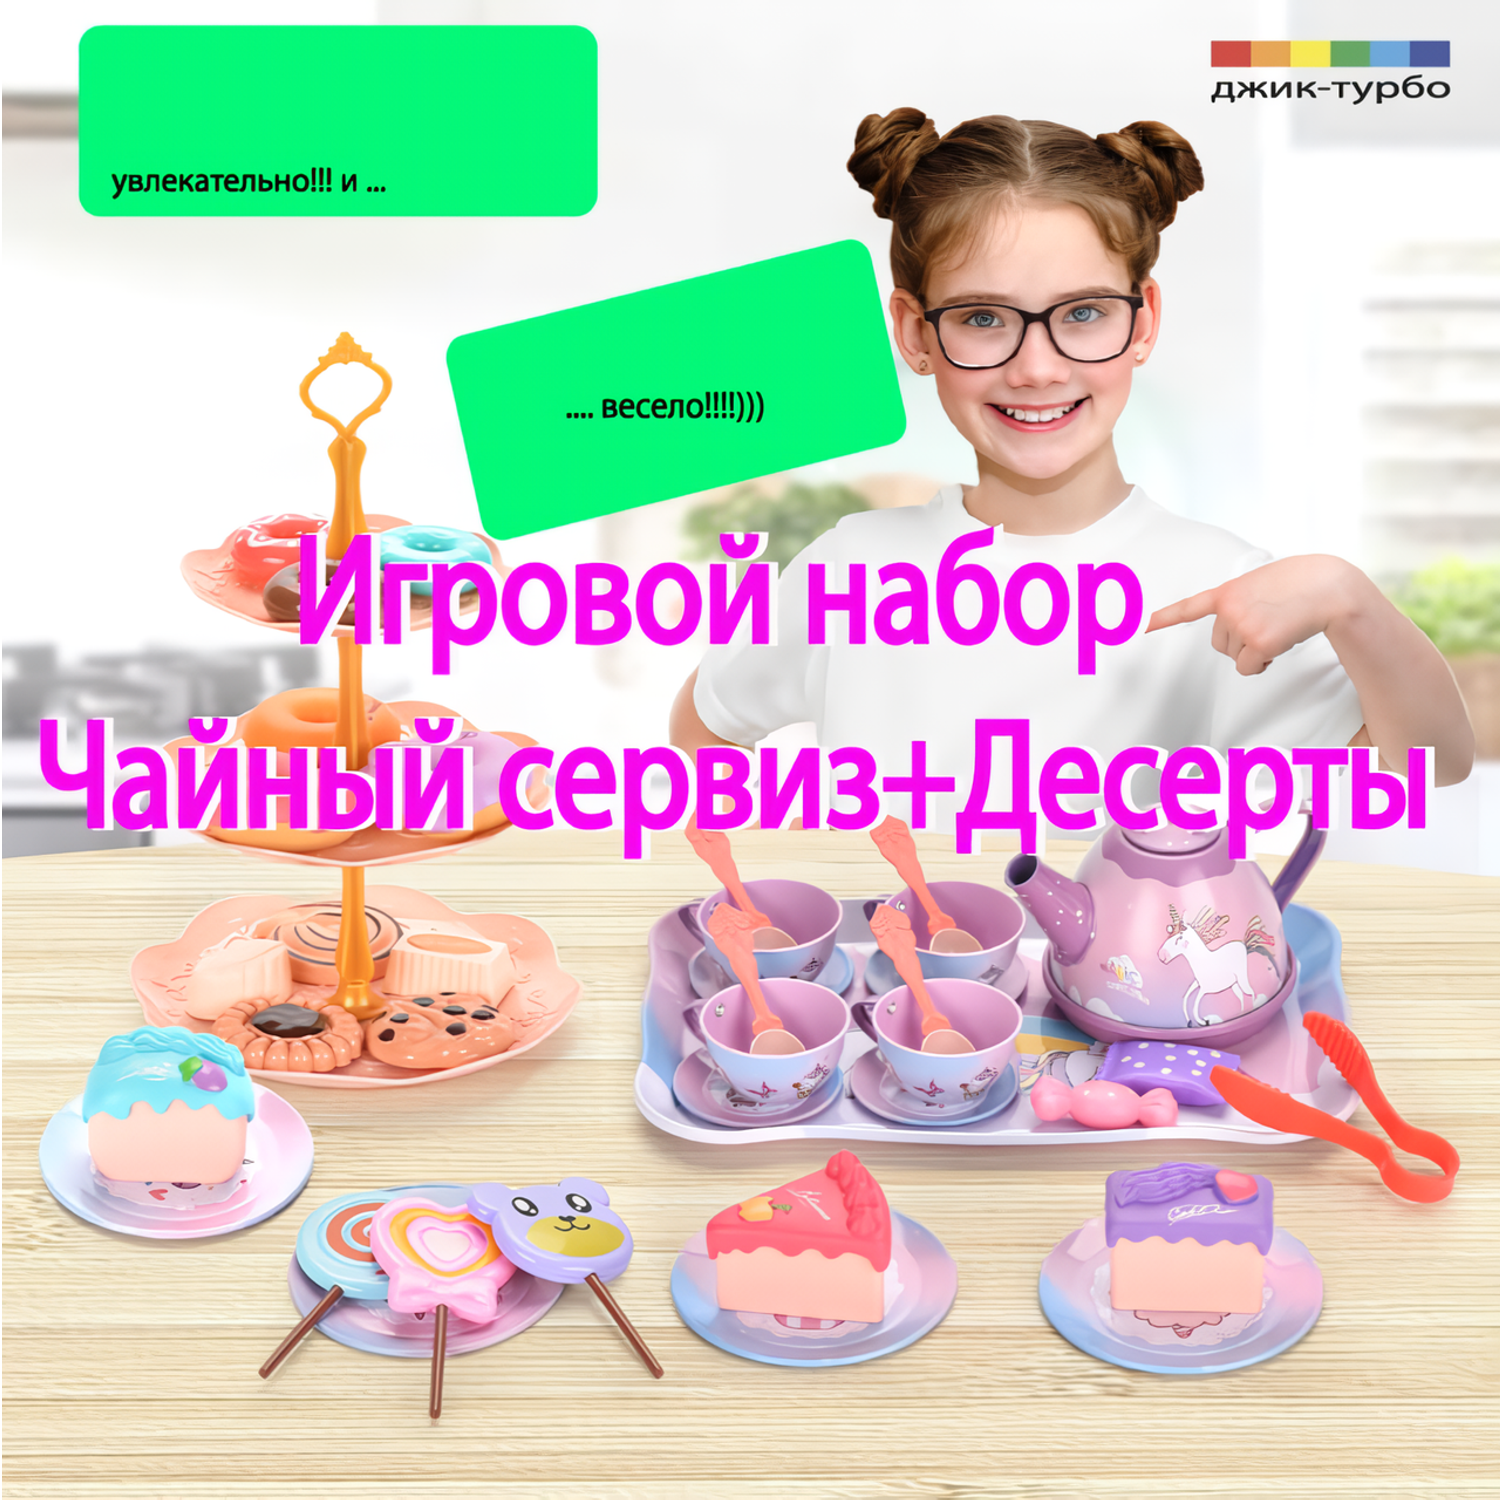 Игровой кухонный набор Джик-Турбо Чайный сервиз Единорог - фото 7